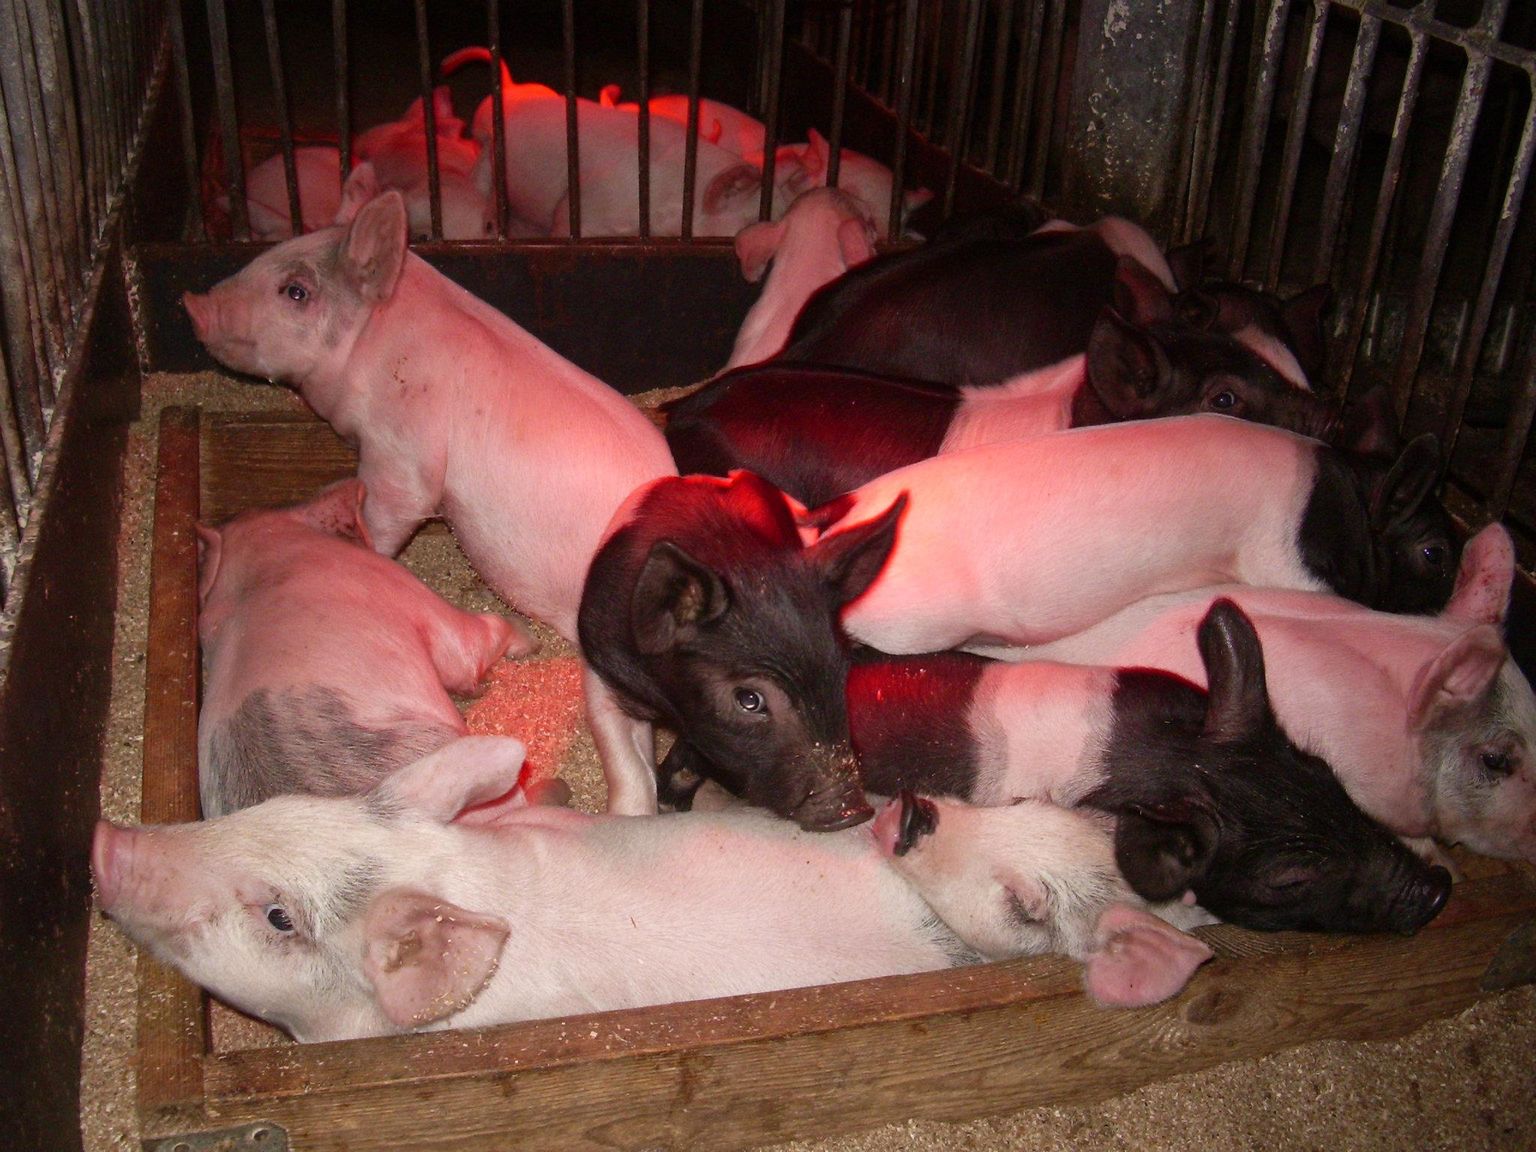 Низкие цены на мясо, африканская чума свиней и резко возросшие цены на энергоносители привели к тому, что свиноводство сокращается.